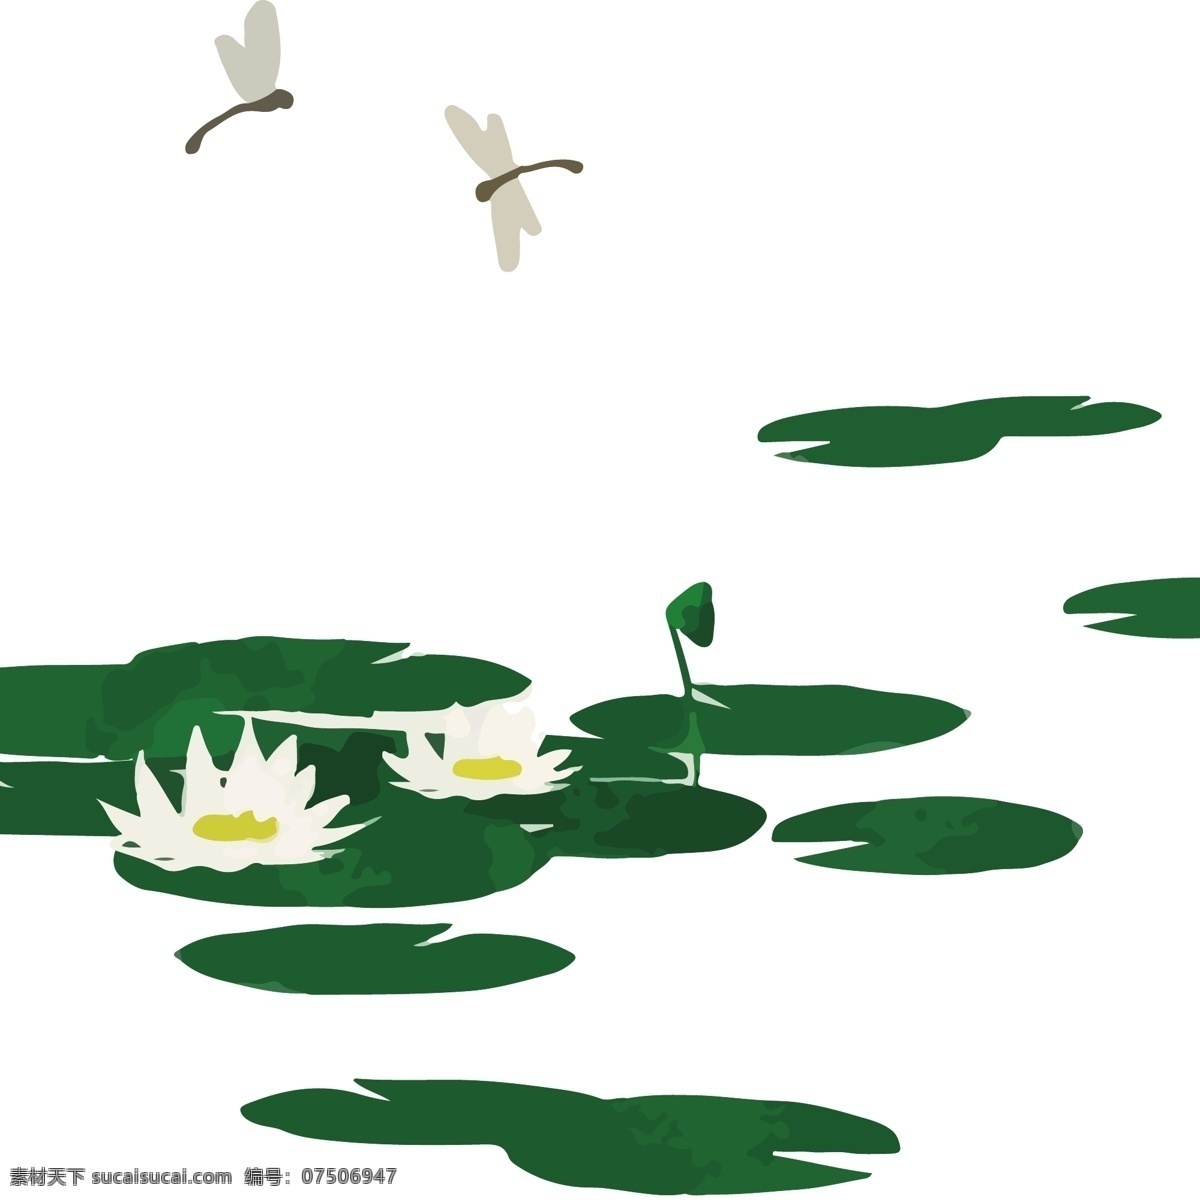 水彩 池塘 荷花 矢量 免 抠 图 卡通的 手绘的 荷叶 莲花 白莲花 白莲 莲蓬 蜻蜓 绿色 植物 夏天 夏日 夏季